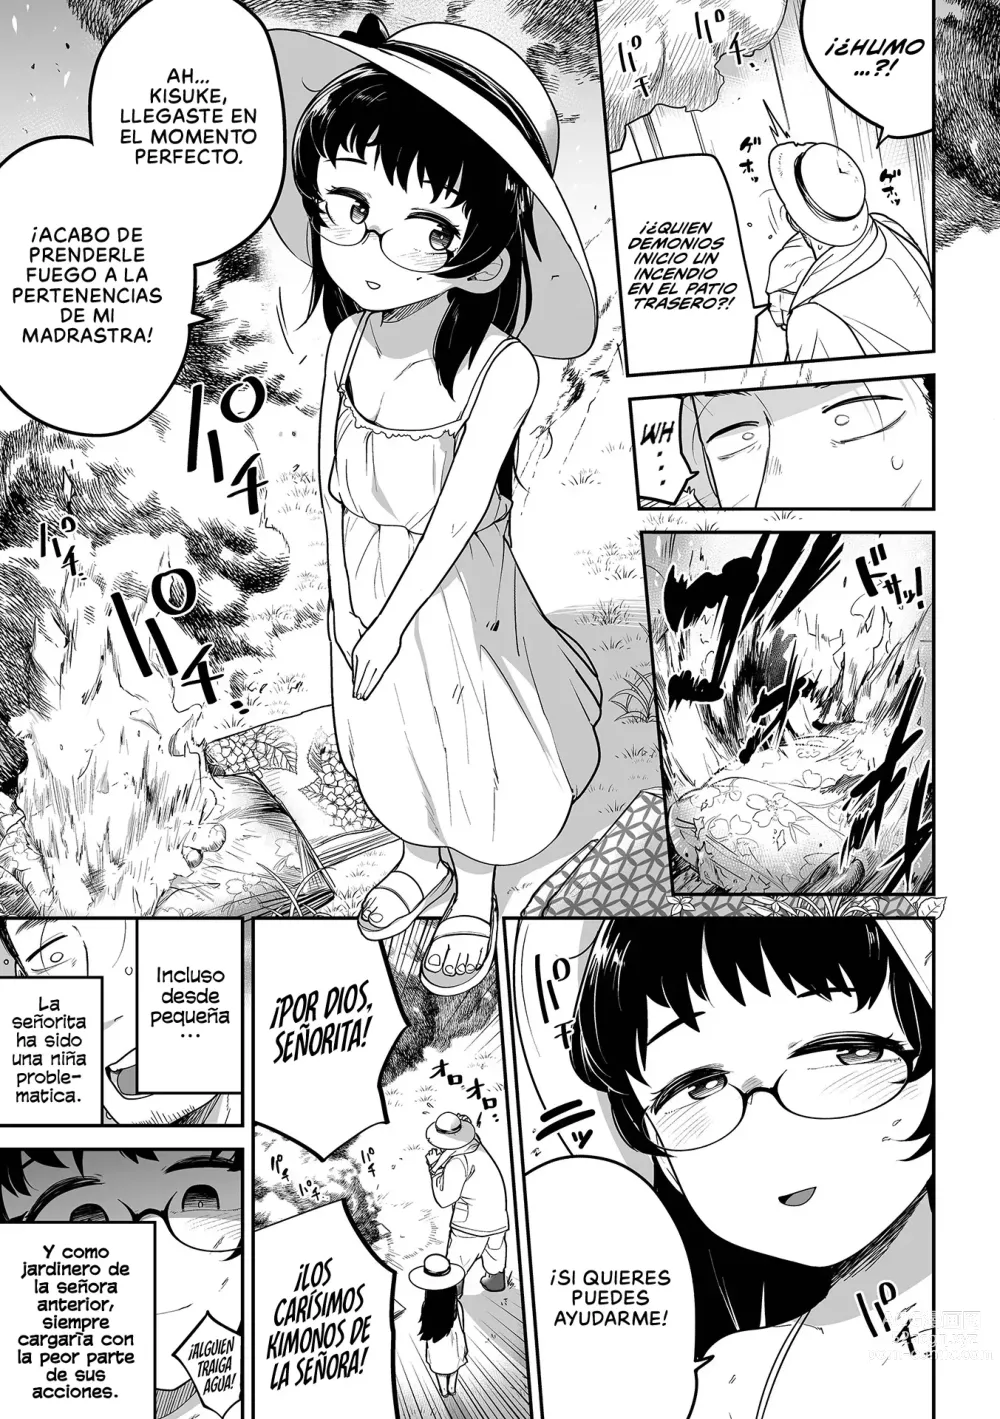 Page 3 of manga Oji Loli Starter Kit